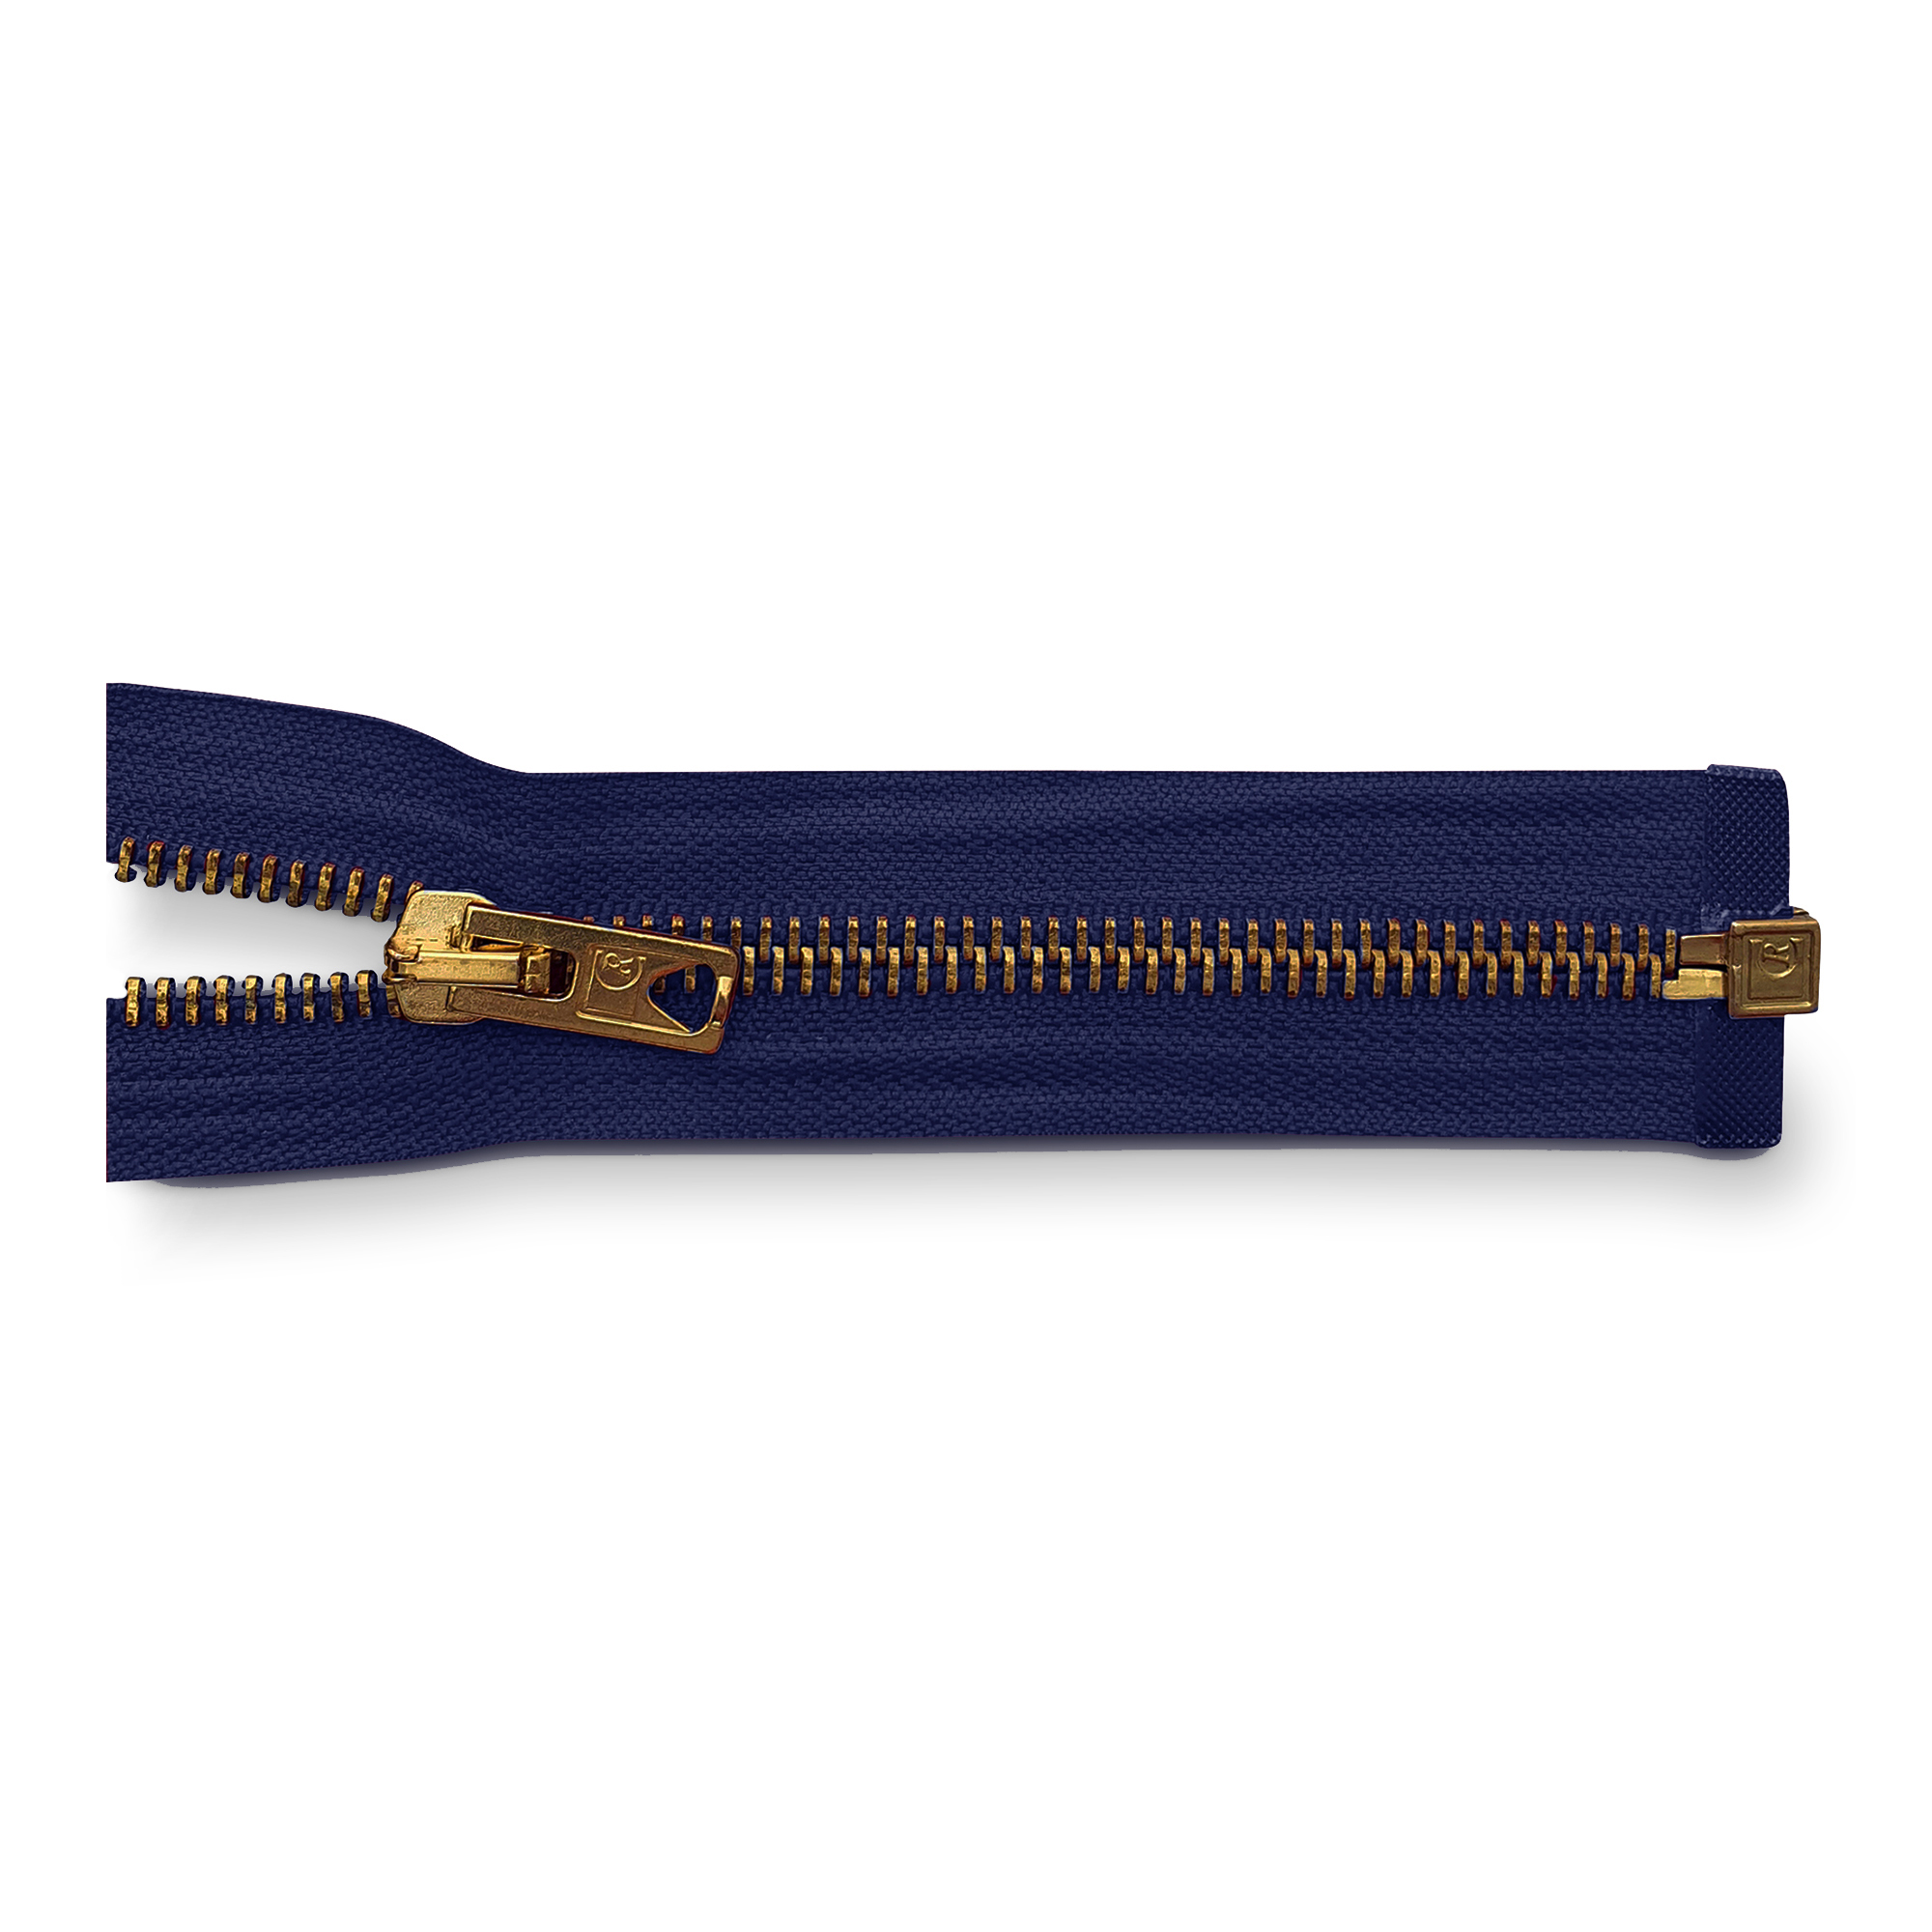 Reißverschluss, teilbar, Metall goldf. breit, dunkelblau, hochwertiger Marken-Reißverschluss von Rubi/Barcelona